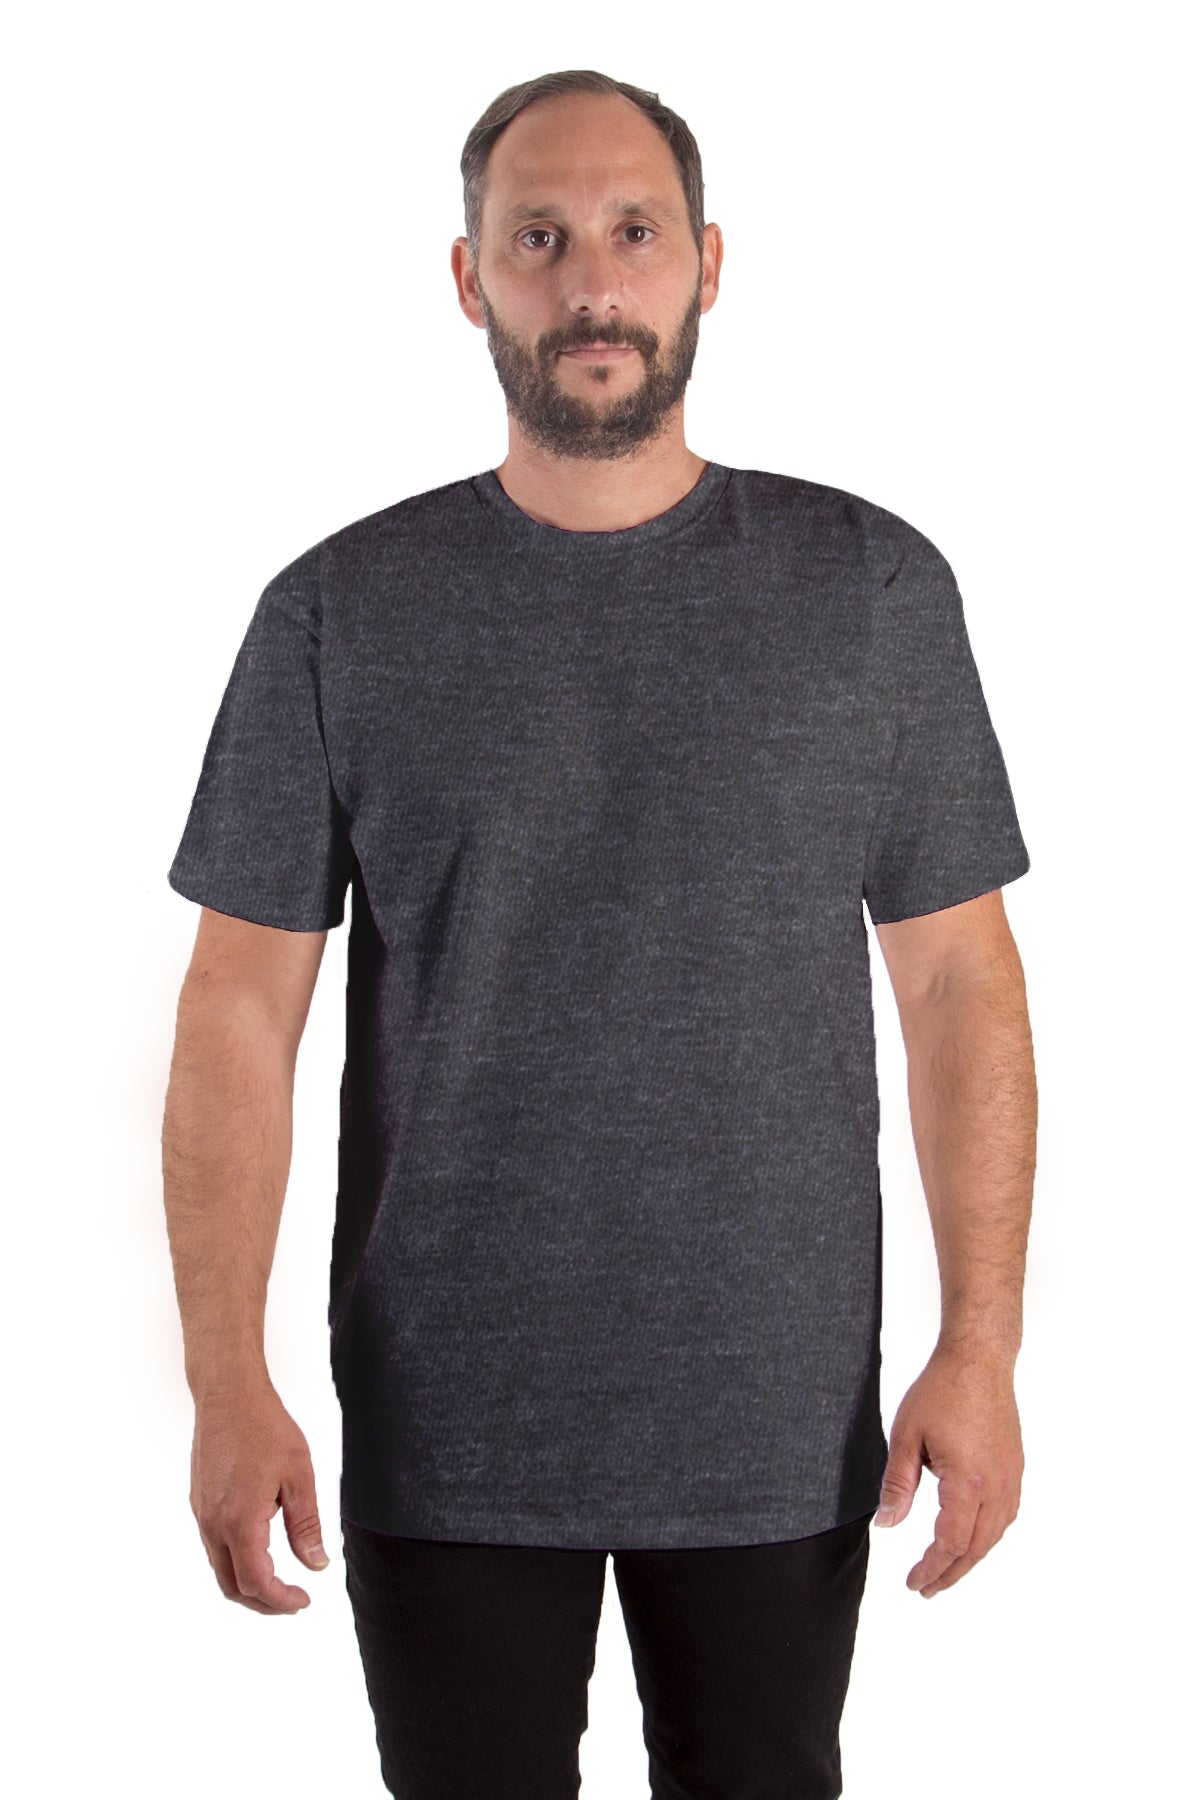 T-Shirt Rundhals (10er-Pack) - anthrazit